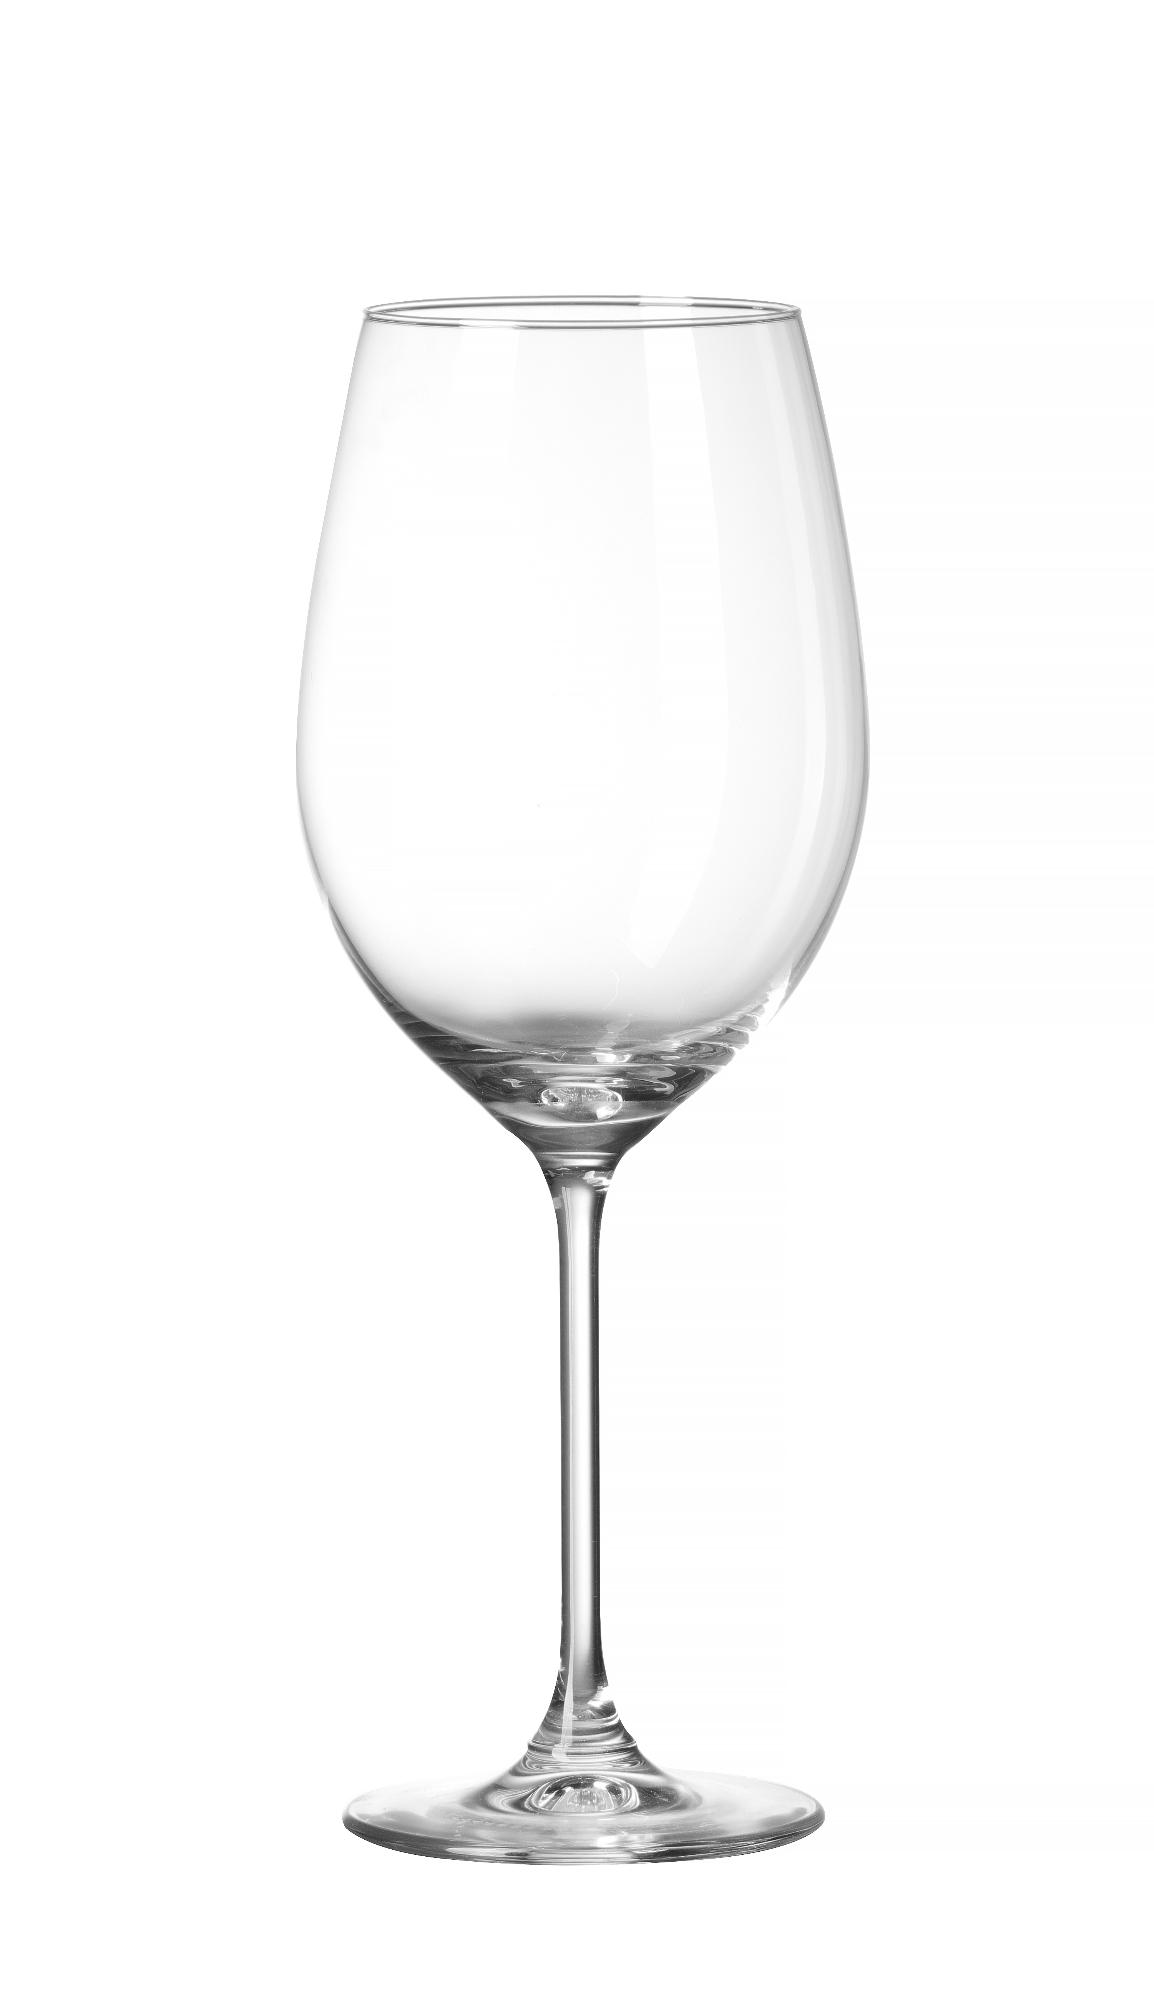 Cantare wine glass, 410ml